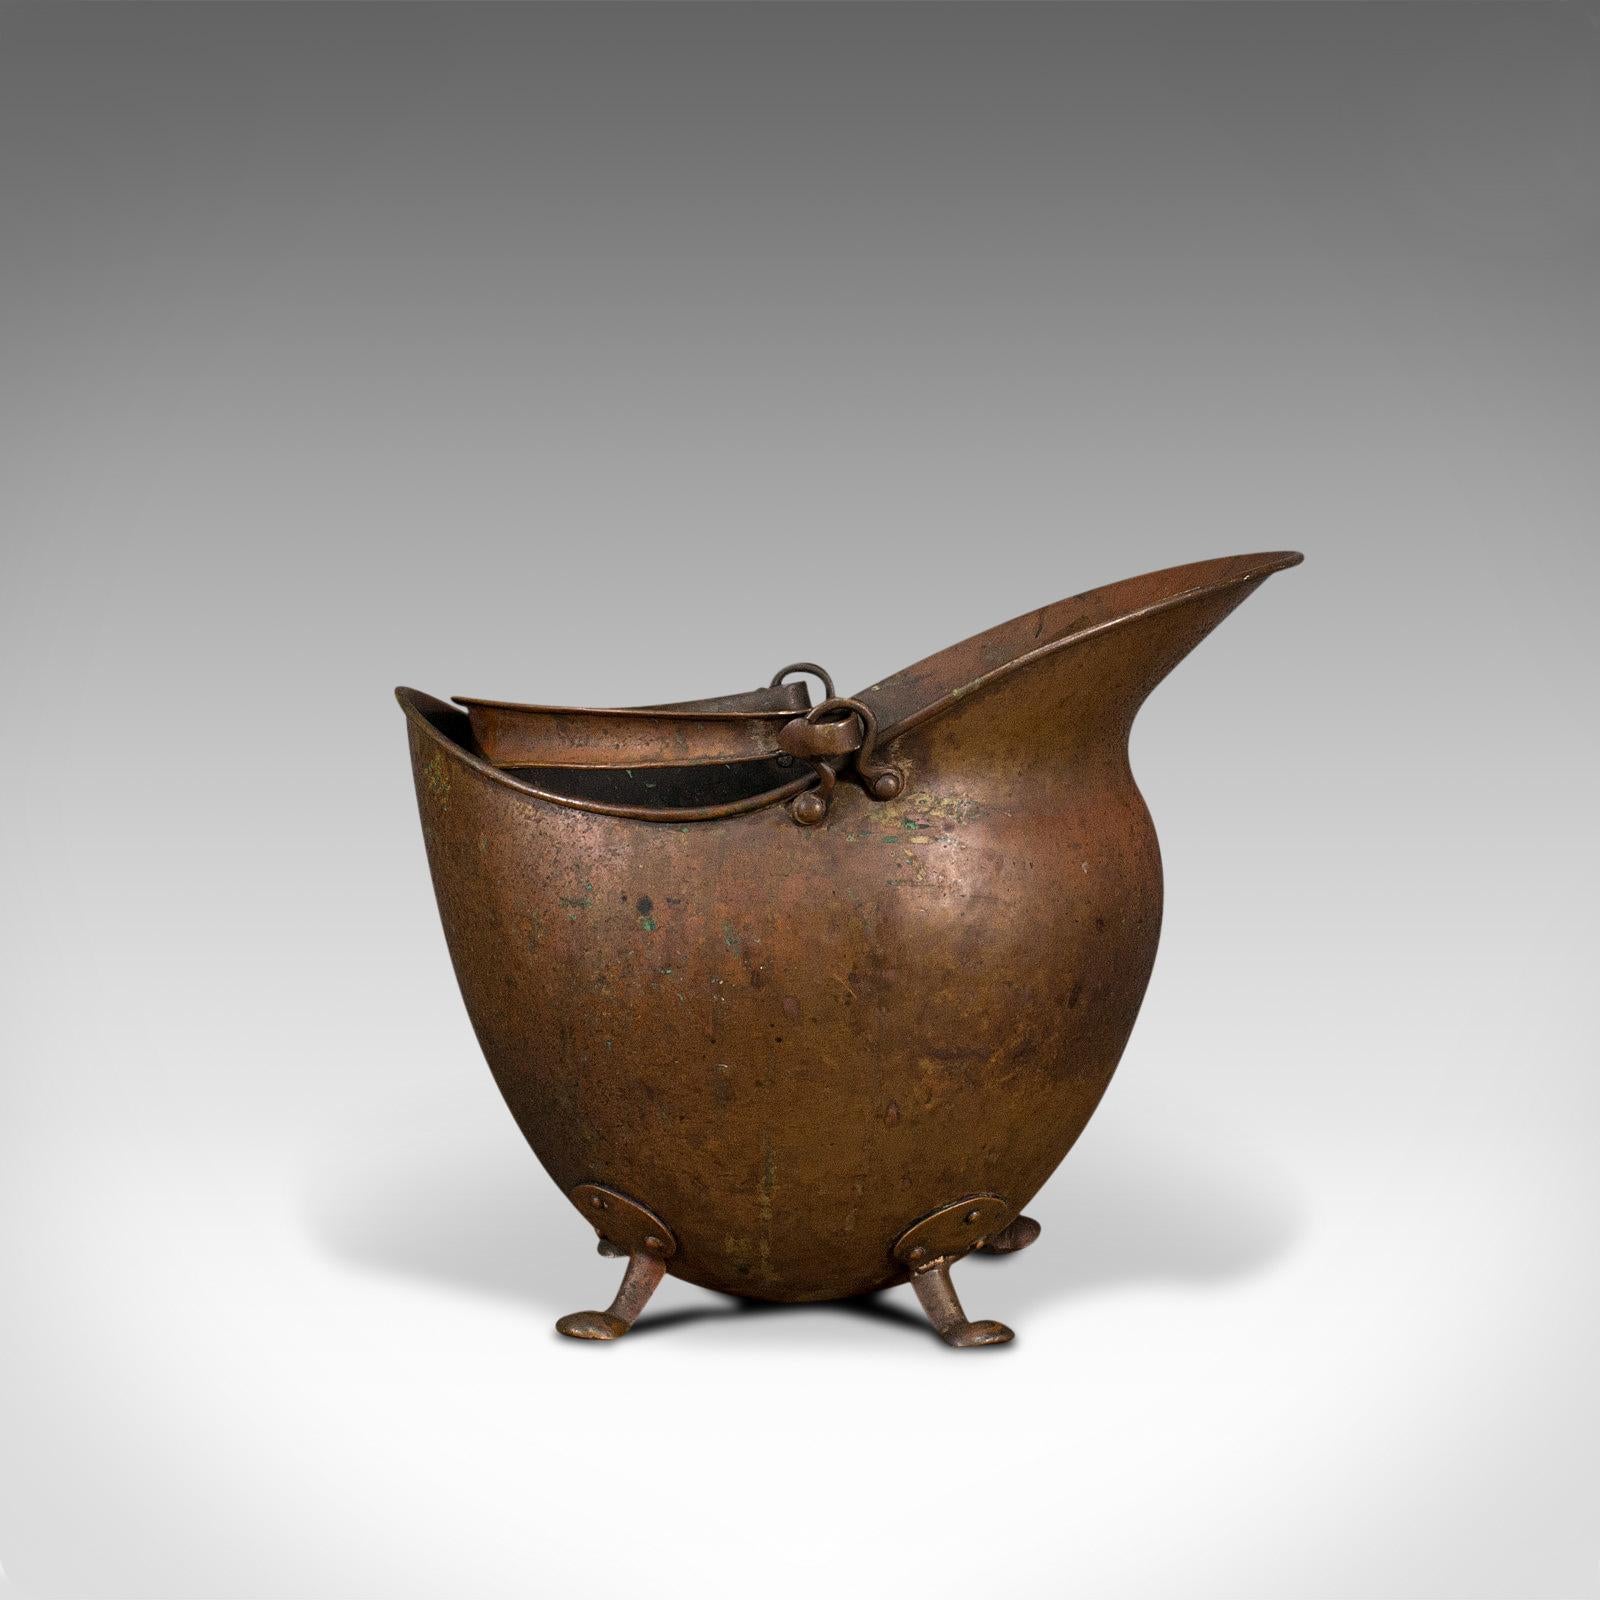 Il s'agit d'un scuttle de casque antique. Un panier à charbon anglais en cuivre pour la cheminée, datant de la période victorienne, vers 1880.

Magnifique patine de la forme globulaire
Affichant une patine vieillie souhaitable et un